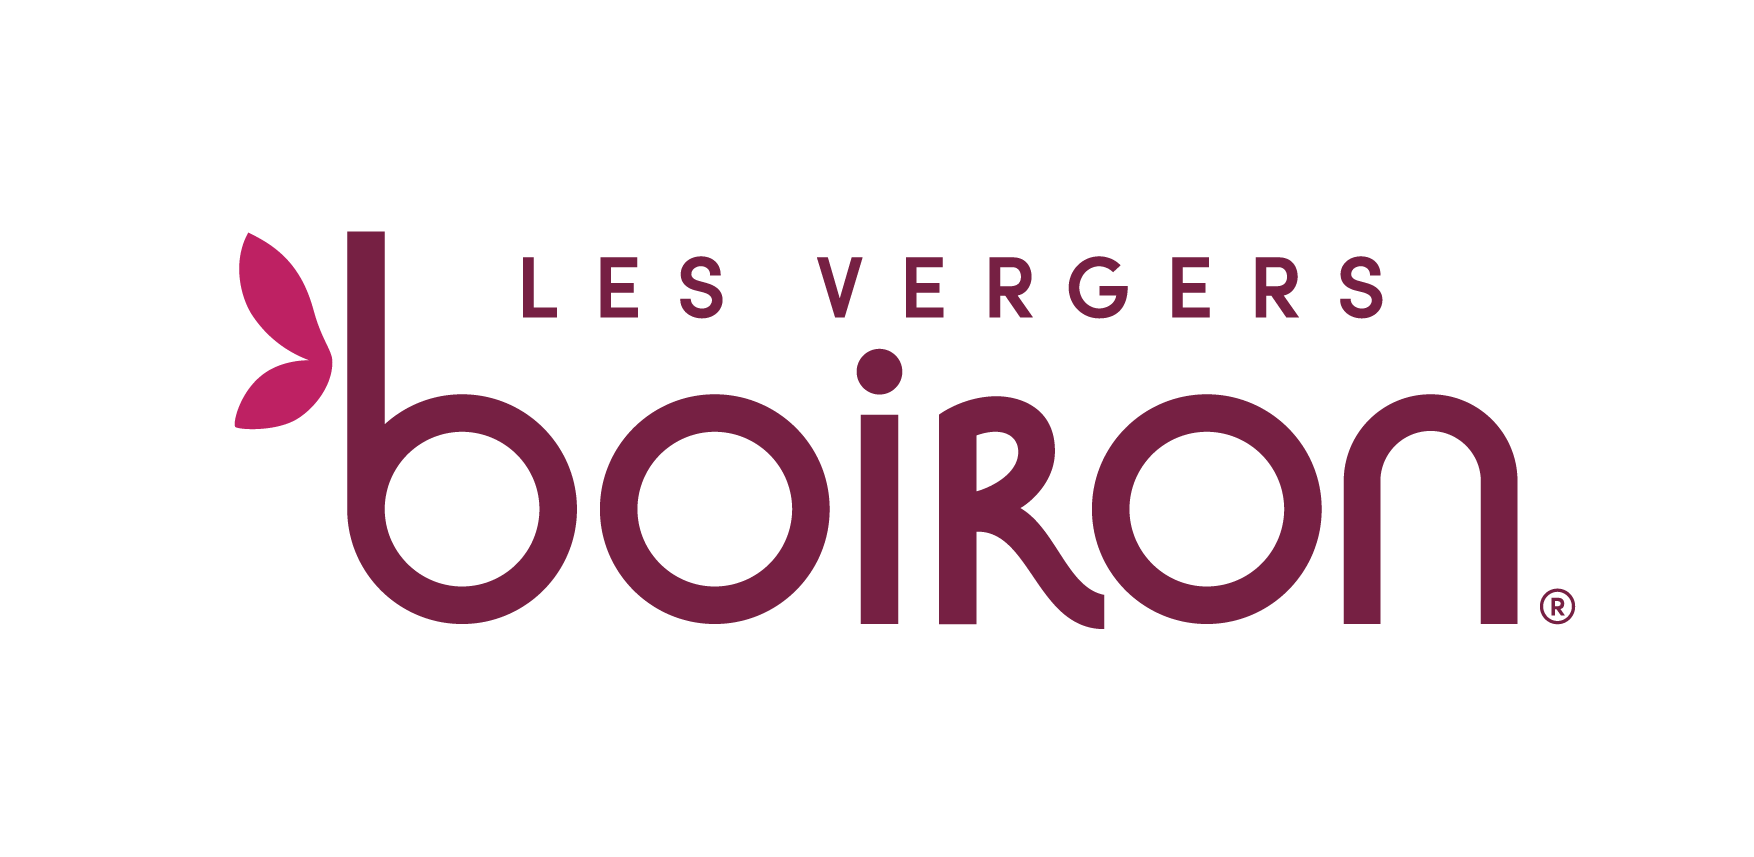 Boiron logo